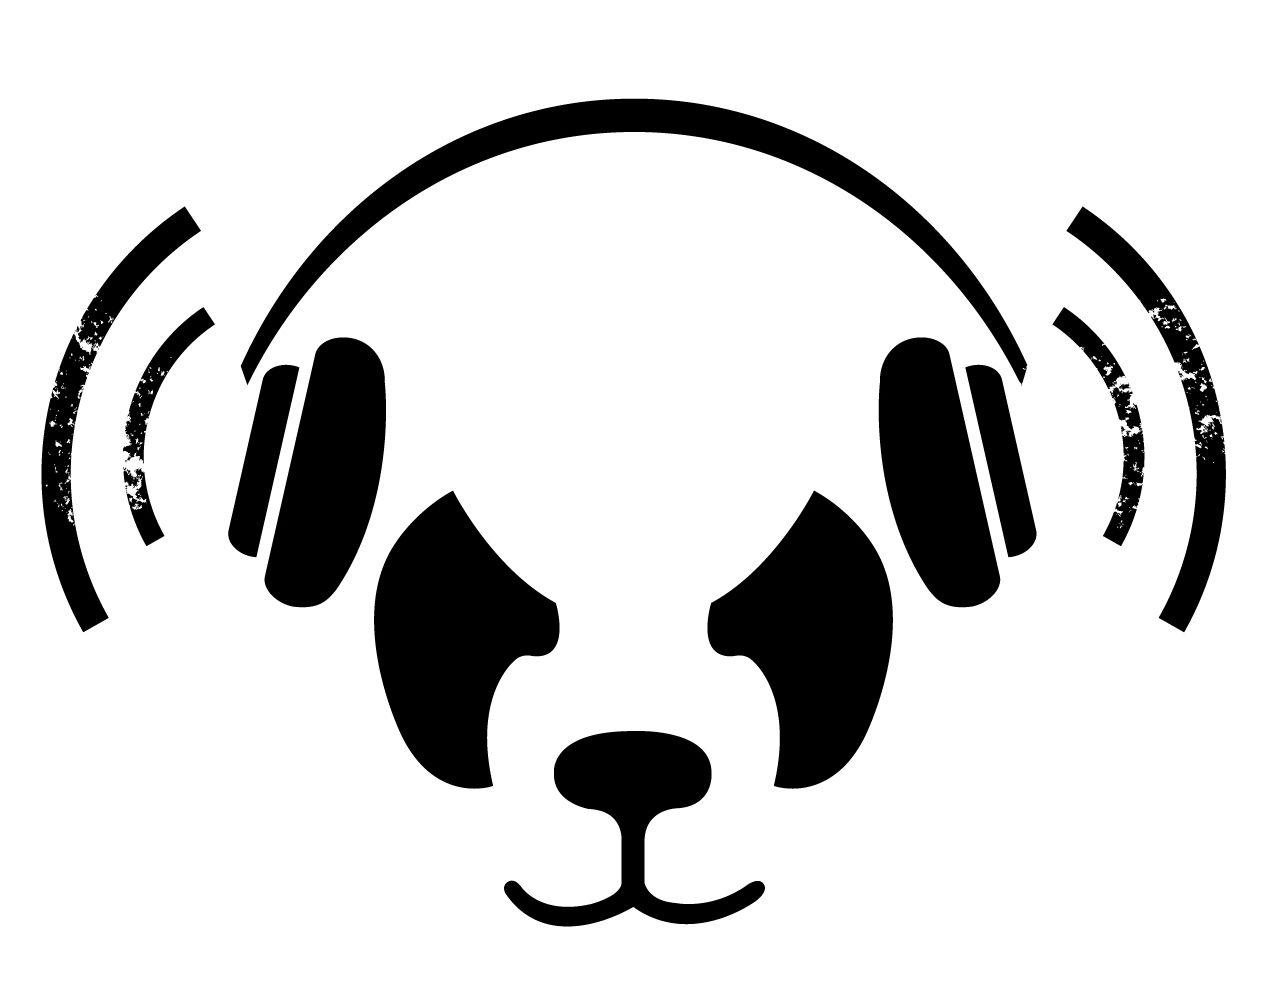 Black and White Panda Logo - White Panda: Versus [Highlights] |